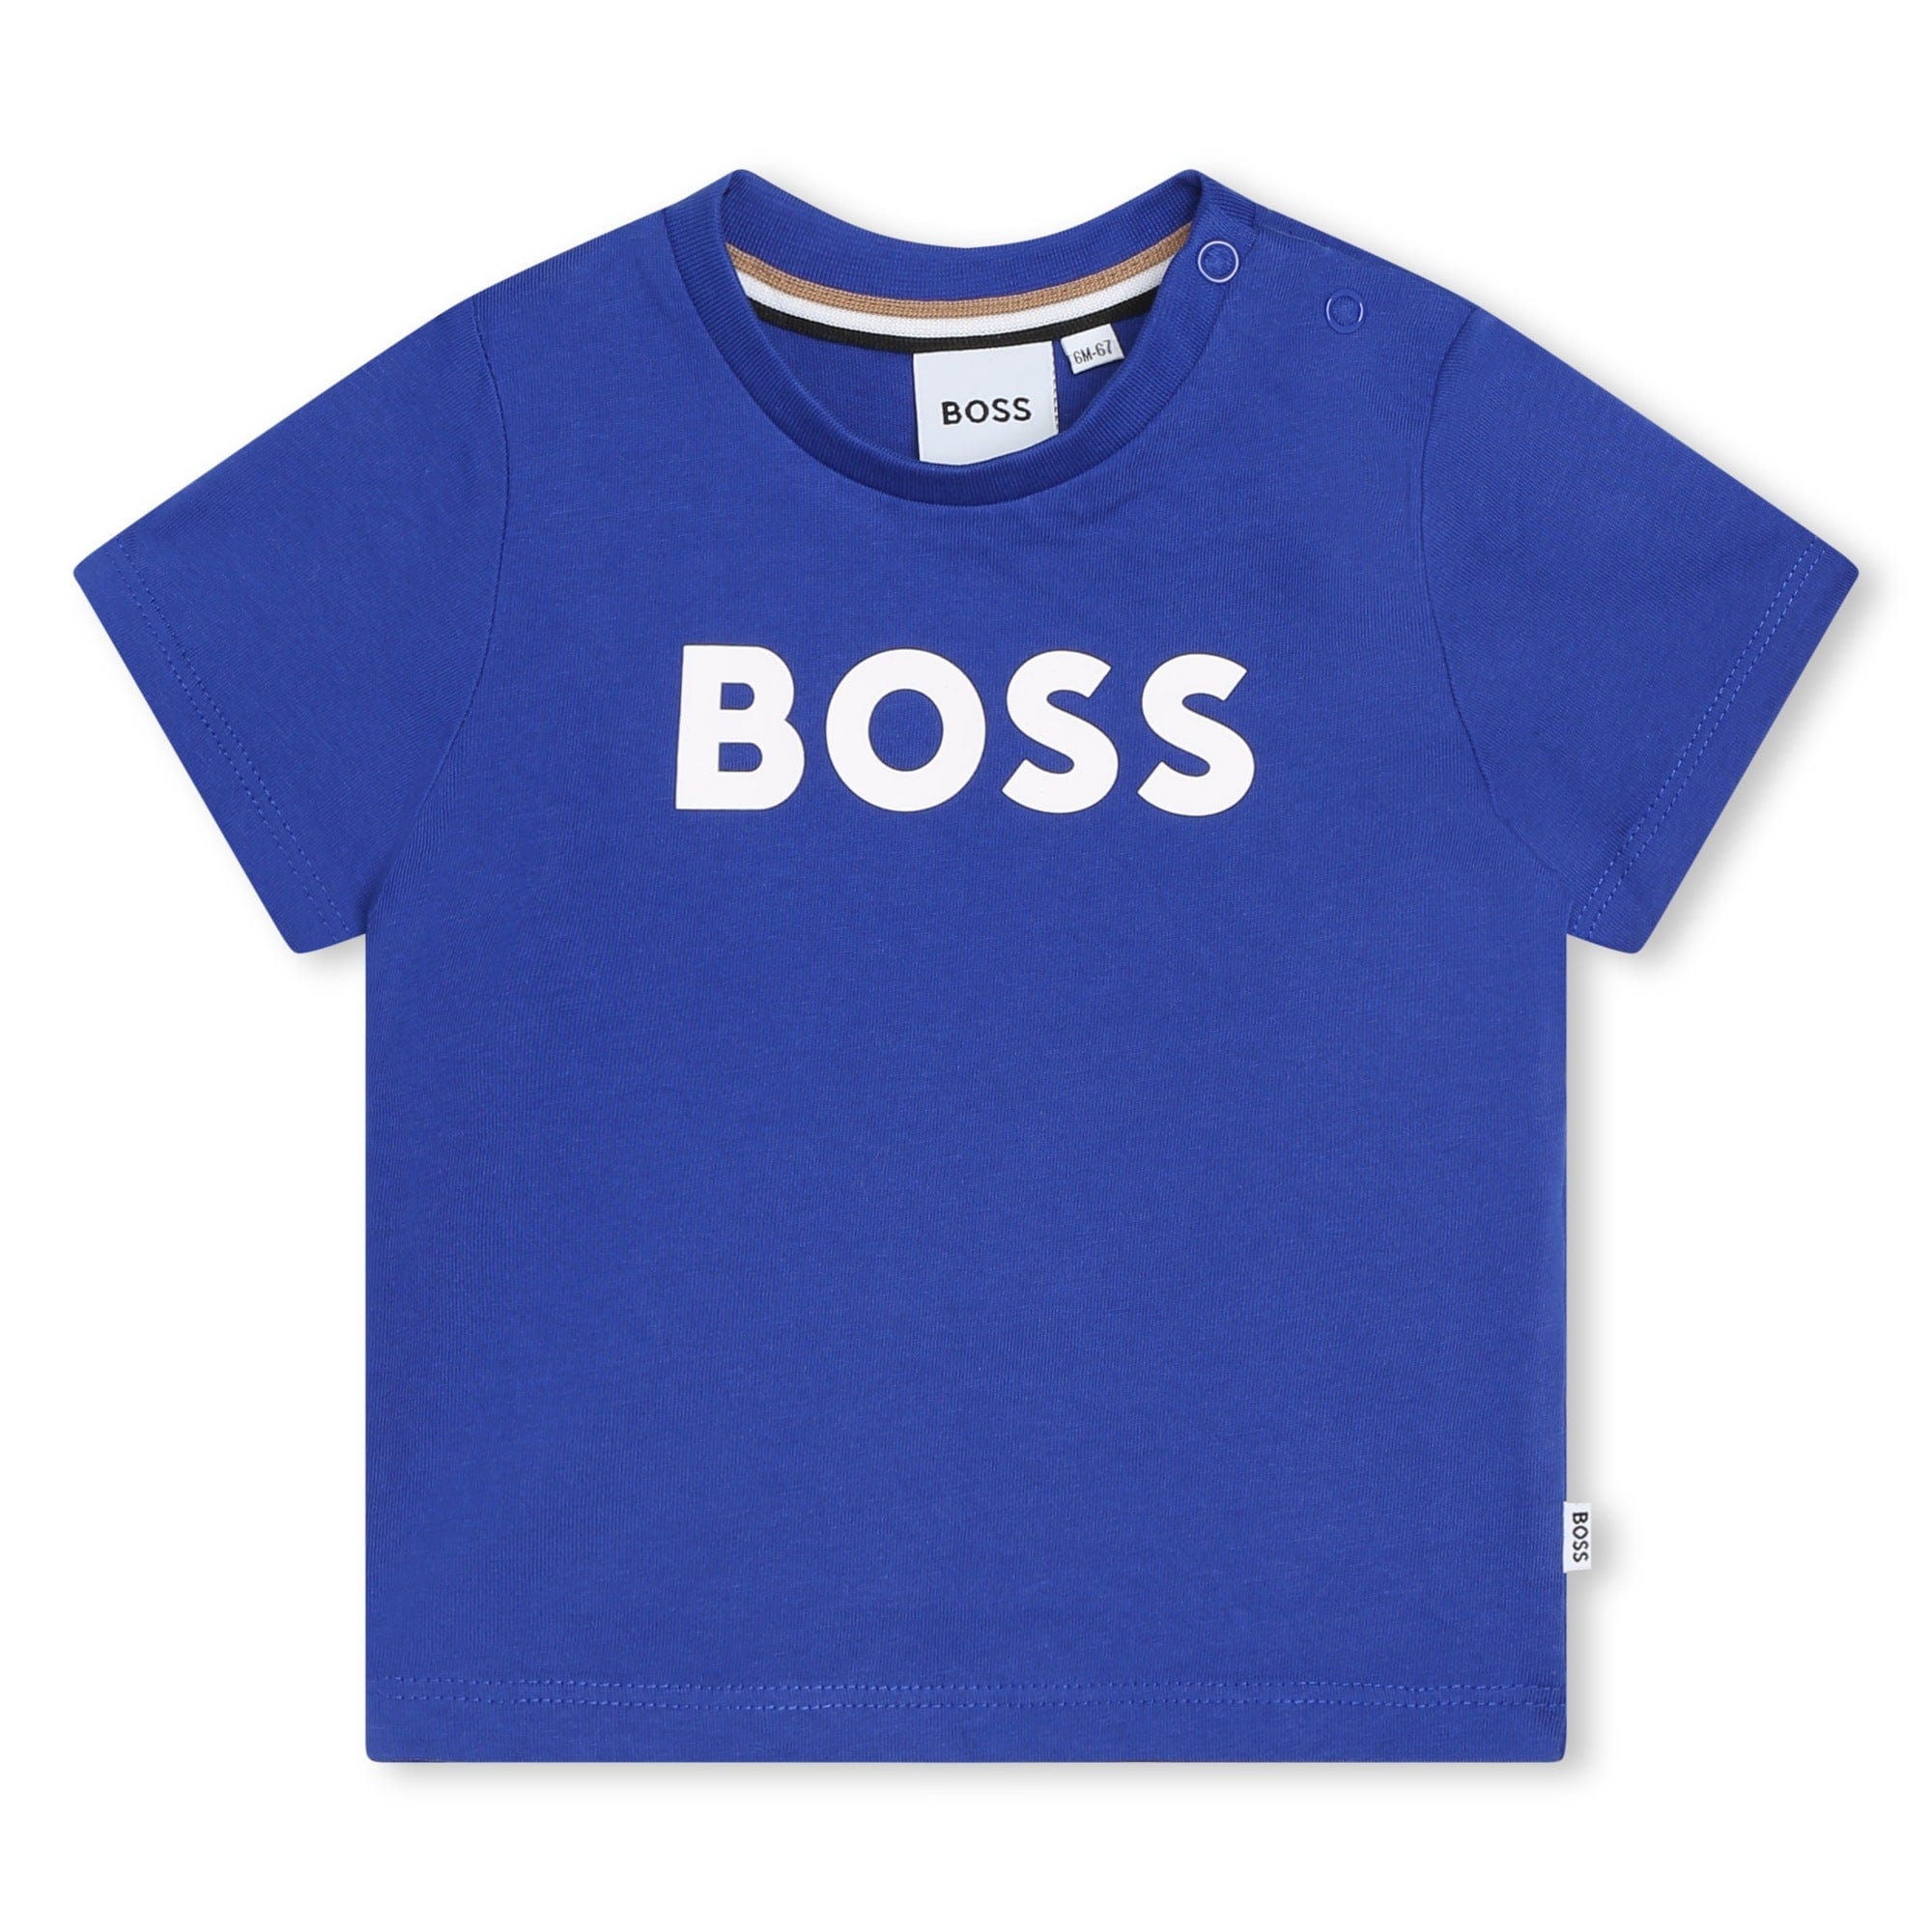 BOSS Tops Boss Boys Blue Jersey Short Sleeves Tee-Shirt